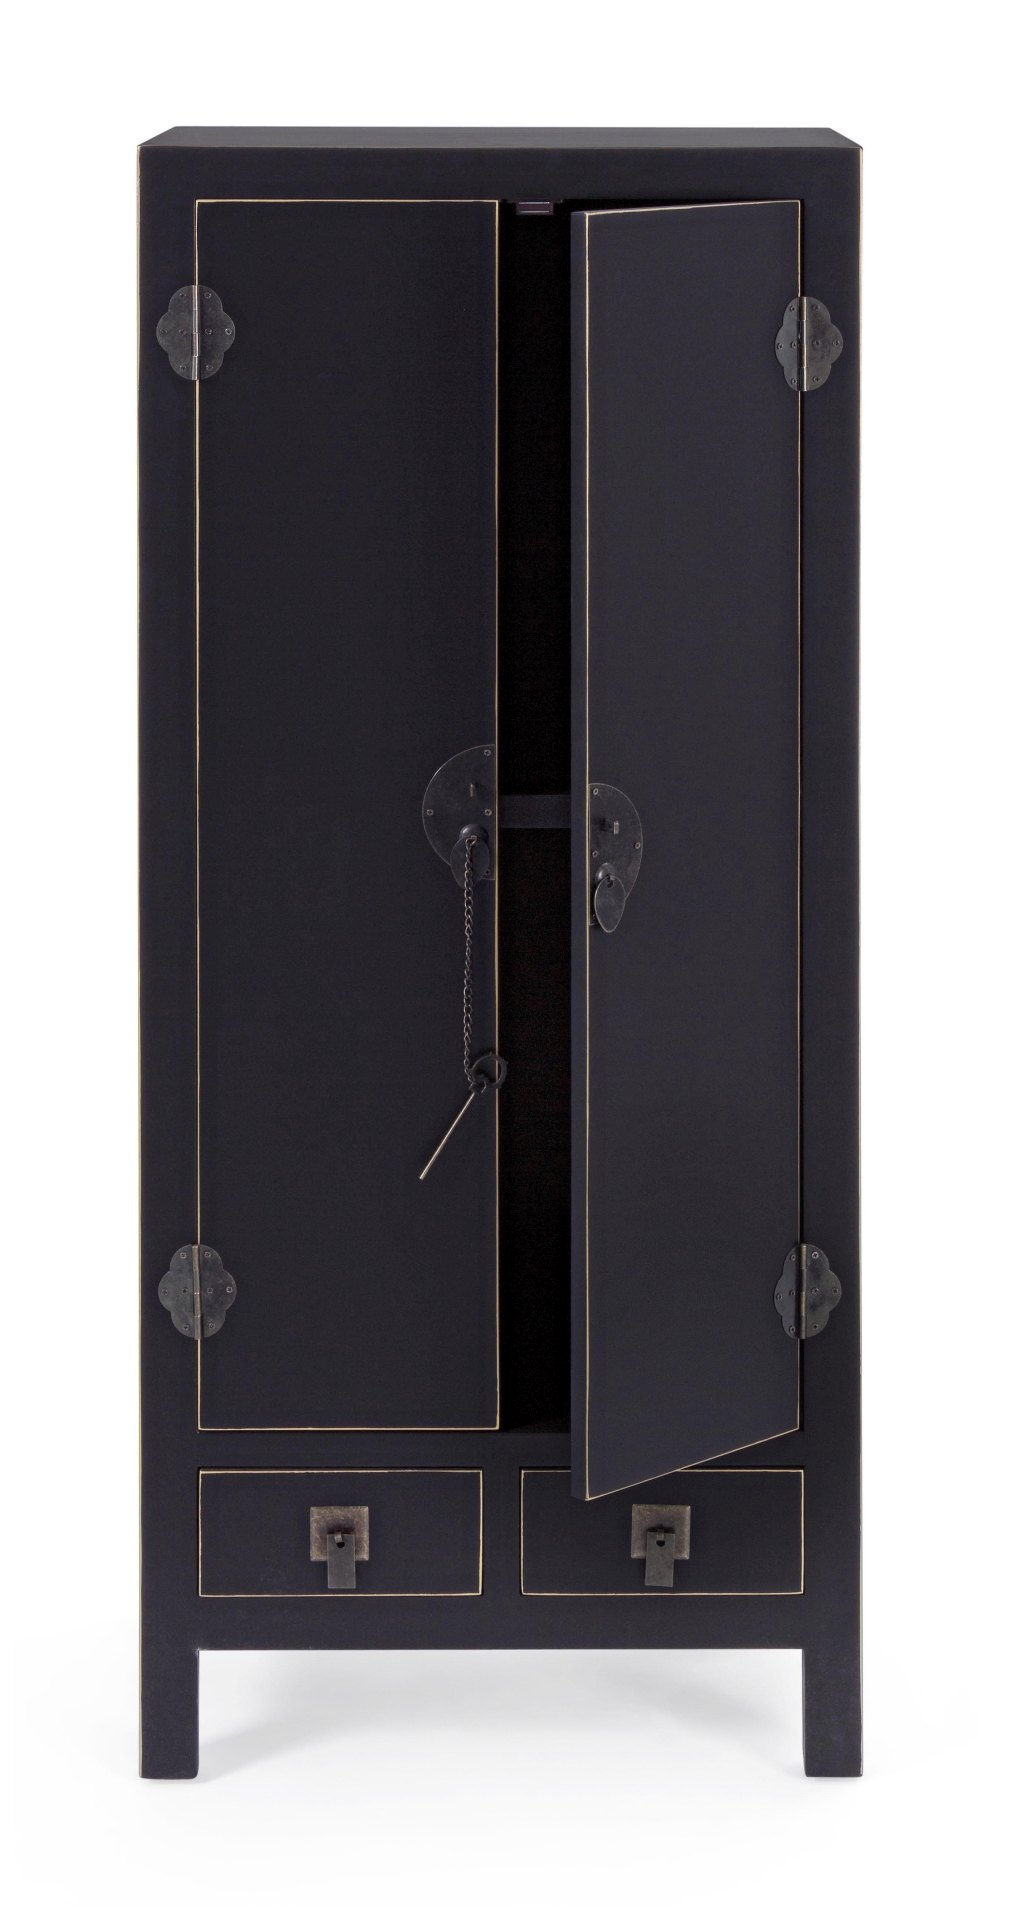 Die Kommode Pechino überzeugt mit ihrem klassischen Design. Gefertigt wurde sie aus Tannen-Holz, welches einen schwarzen Farbton besitzt. Das Gestell ist auch aus Tannen-Holz. Die Kommode verfügt über zwei Türen und zwei Schubladen. Die Breite beträgt 50 